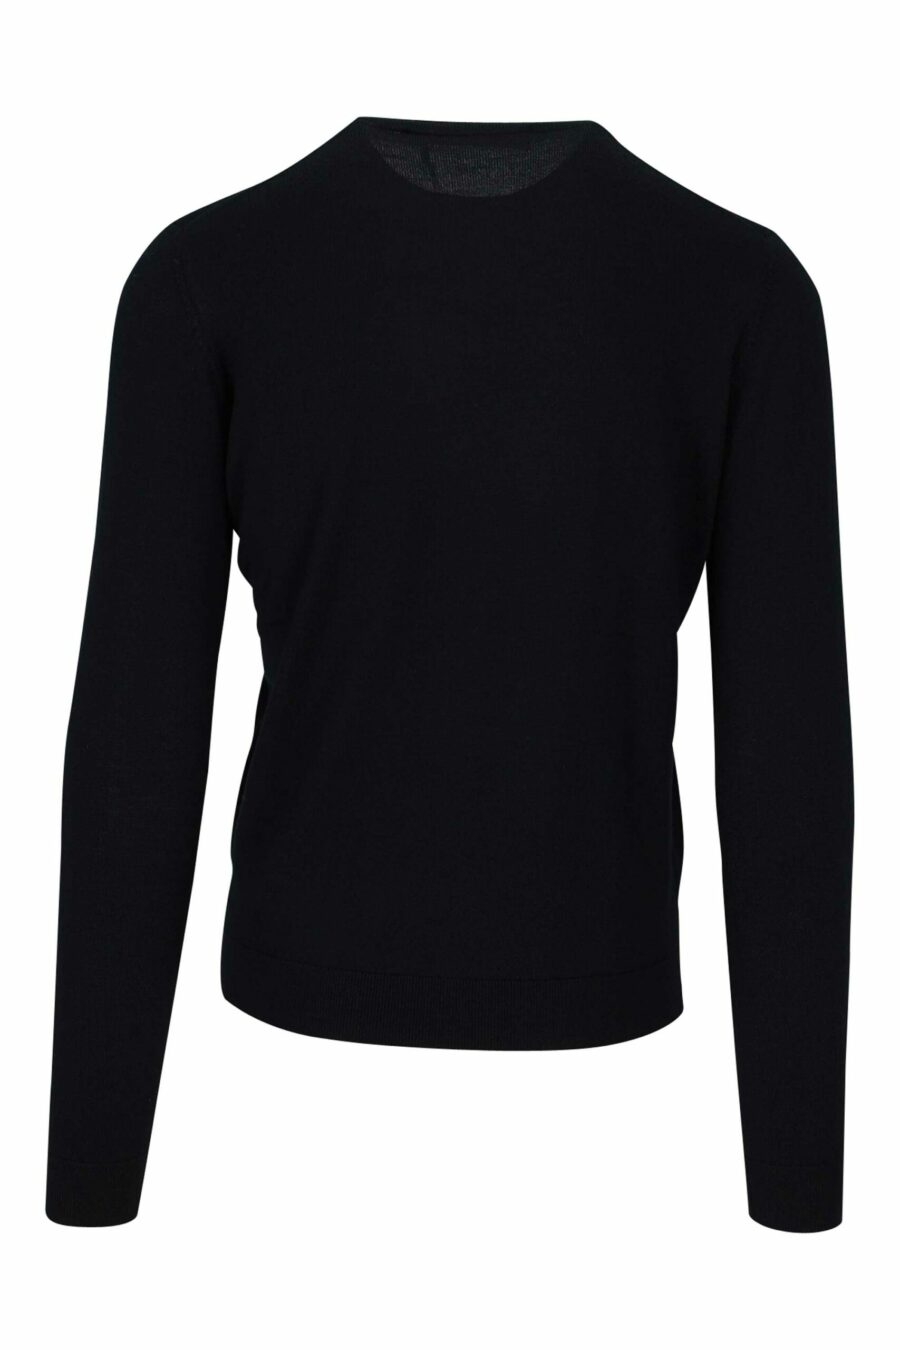 Schwarzer Pullover mit gesticktem Mini-Logo - 4062226637664 1 skaliert